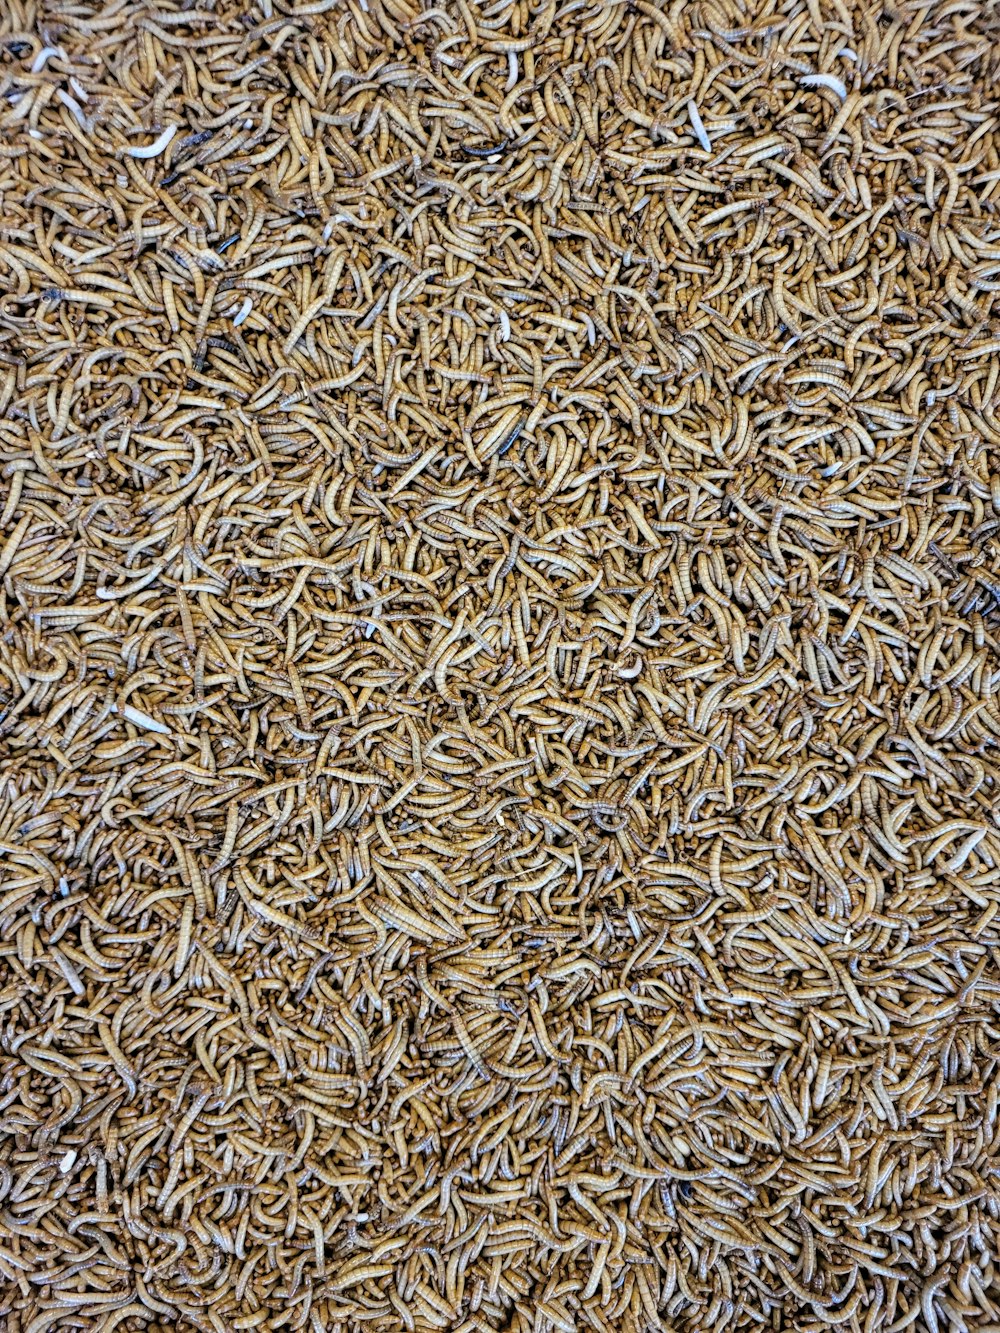 Un primo piano di un mucchio di riso integrale